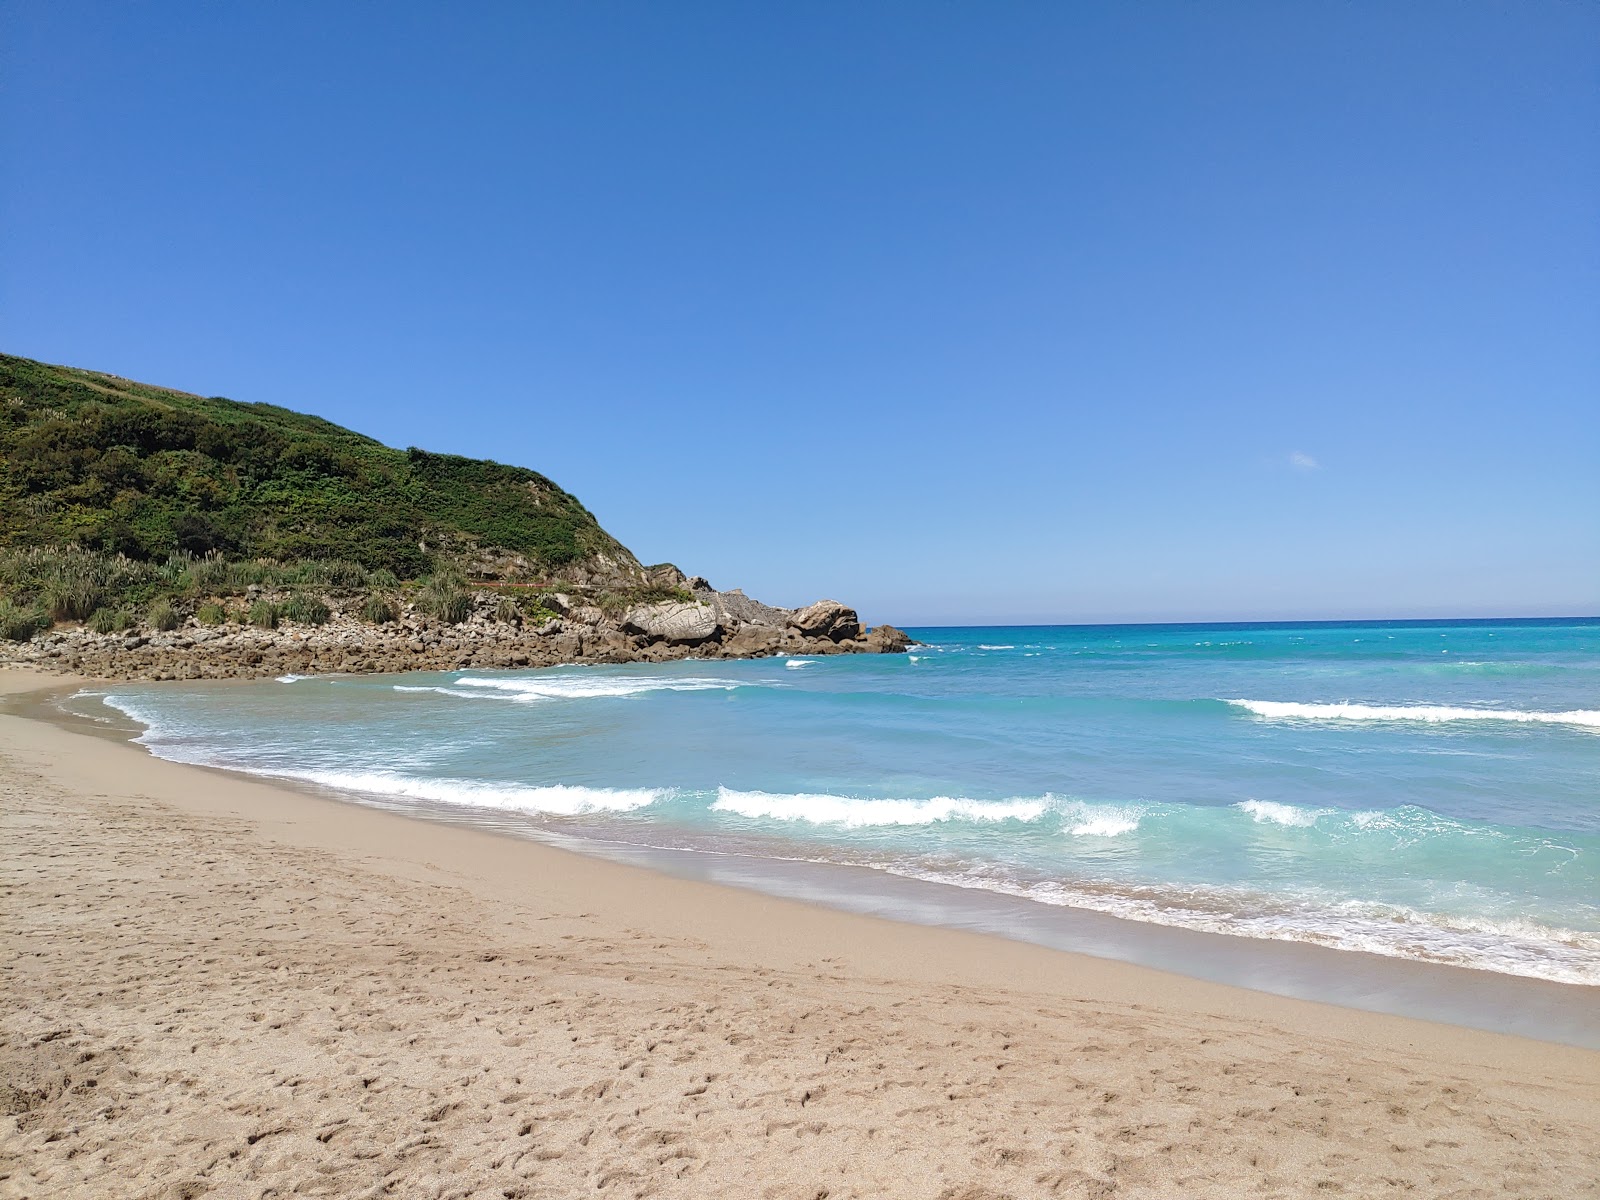 Valokuva Playa de Usgoista. pinnalla turkoosi puhdas vesi:n kanssa